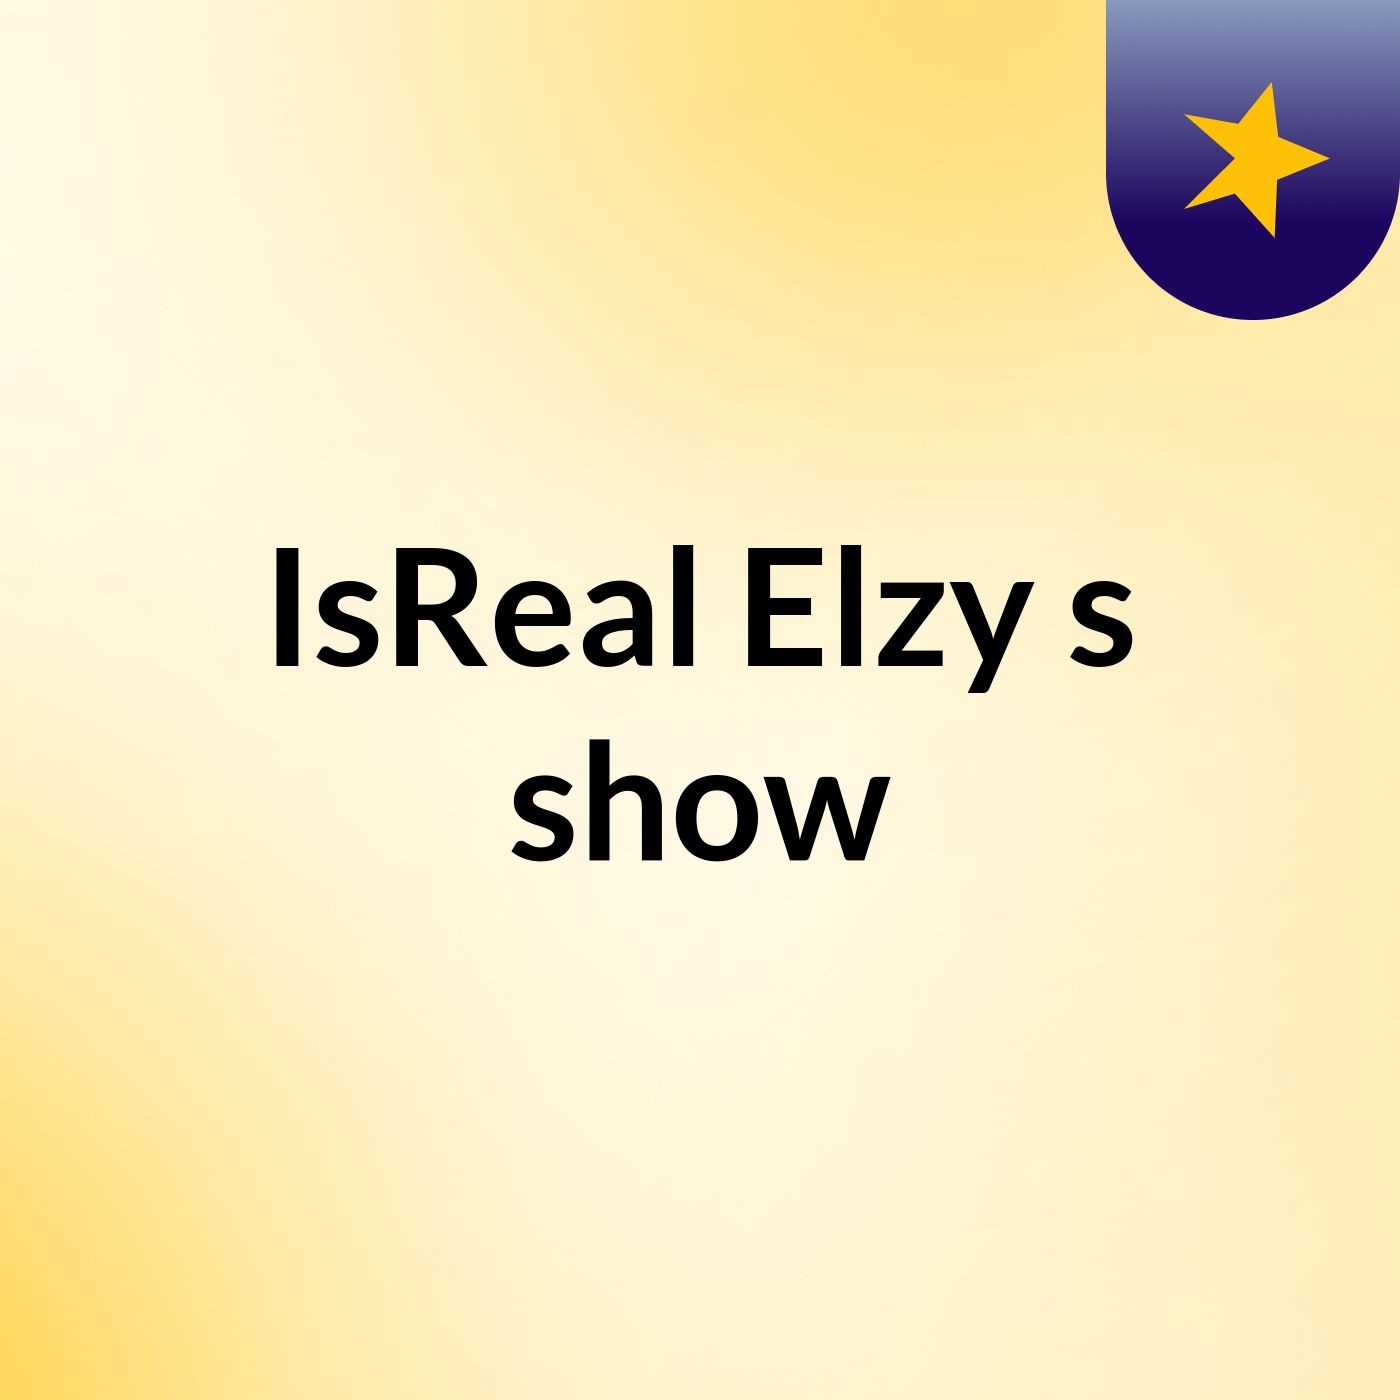 Episode 2 - IsReal Elzy's show